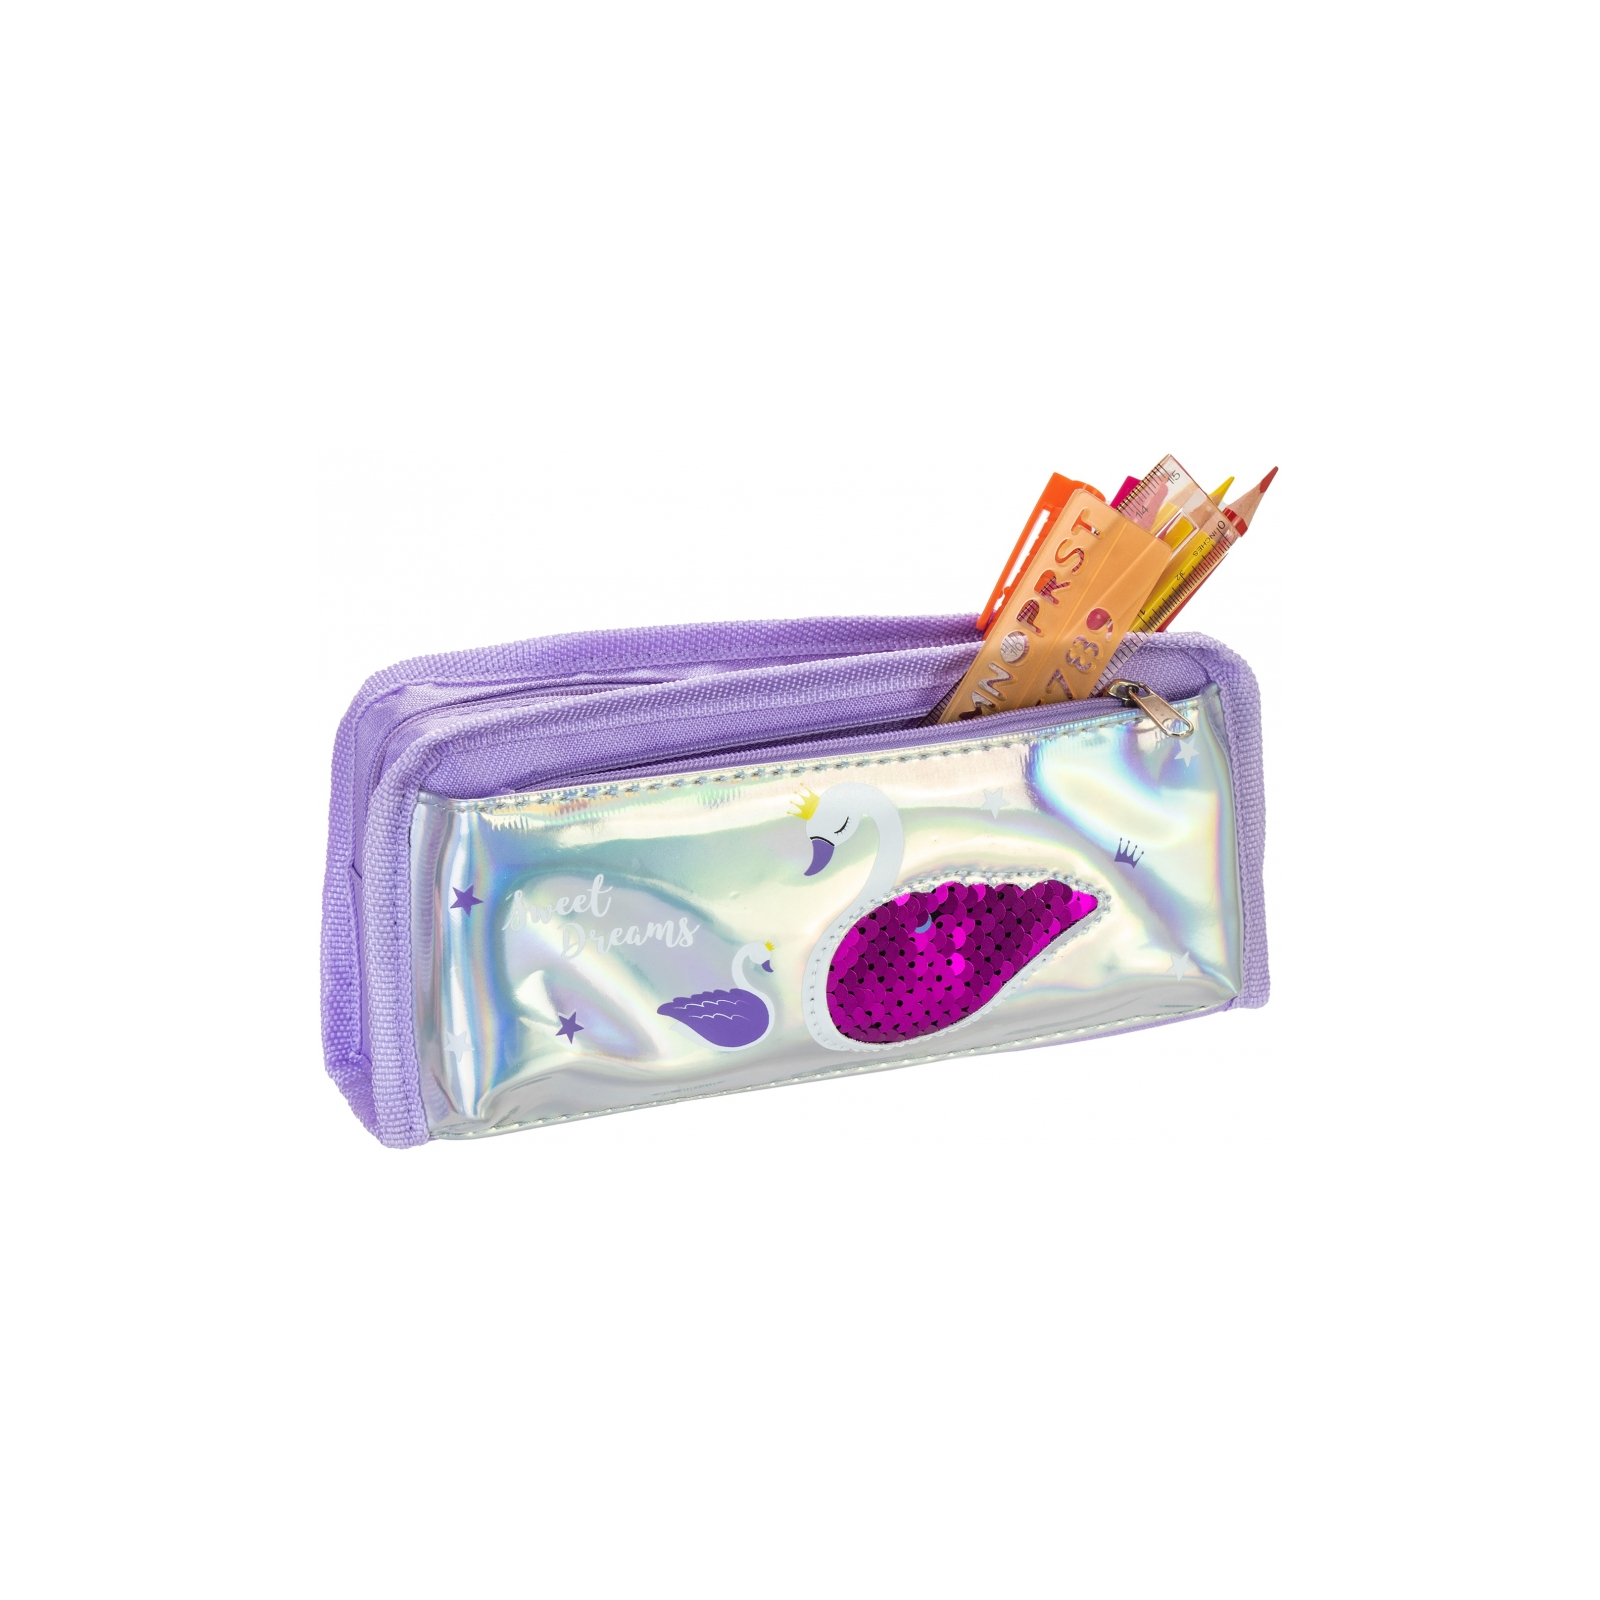 Пенал Cool For School голографічний з паєтками Sweet Dreams фіолетовий (CF86968) зображення 2